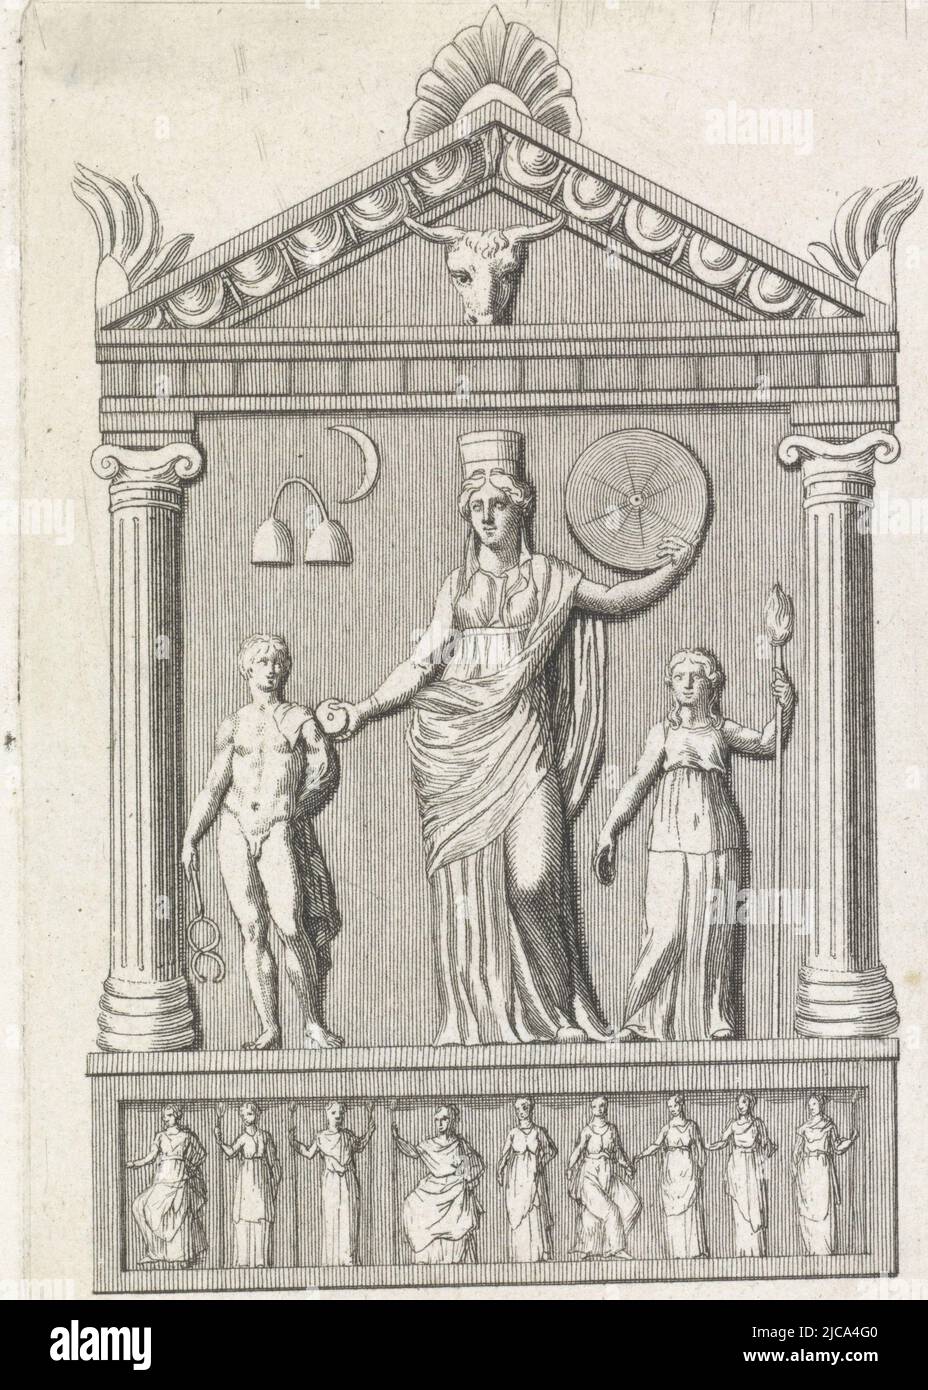 Pierre d'autel avec la déesse Cybele au centre à gauche le dieu Mercure à droite une déesse au fond une frise avec des figures féminines, autel à Cybele, imprimeur: Anonyme, 1800 - 1900, papier, gravure, h 128 mm × l 90 mm Banque D'Images